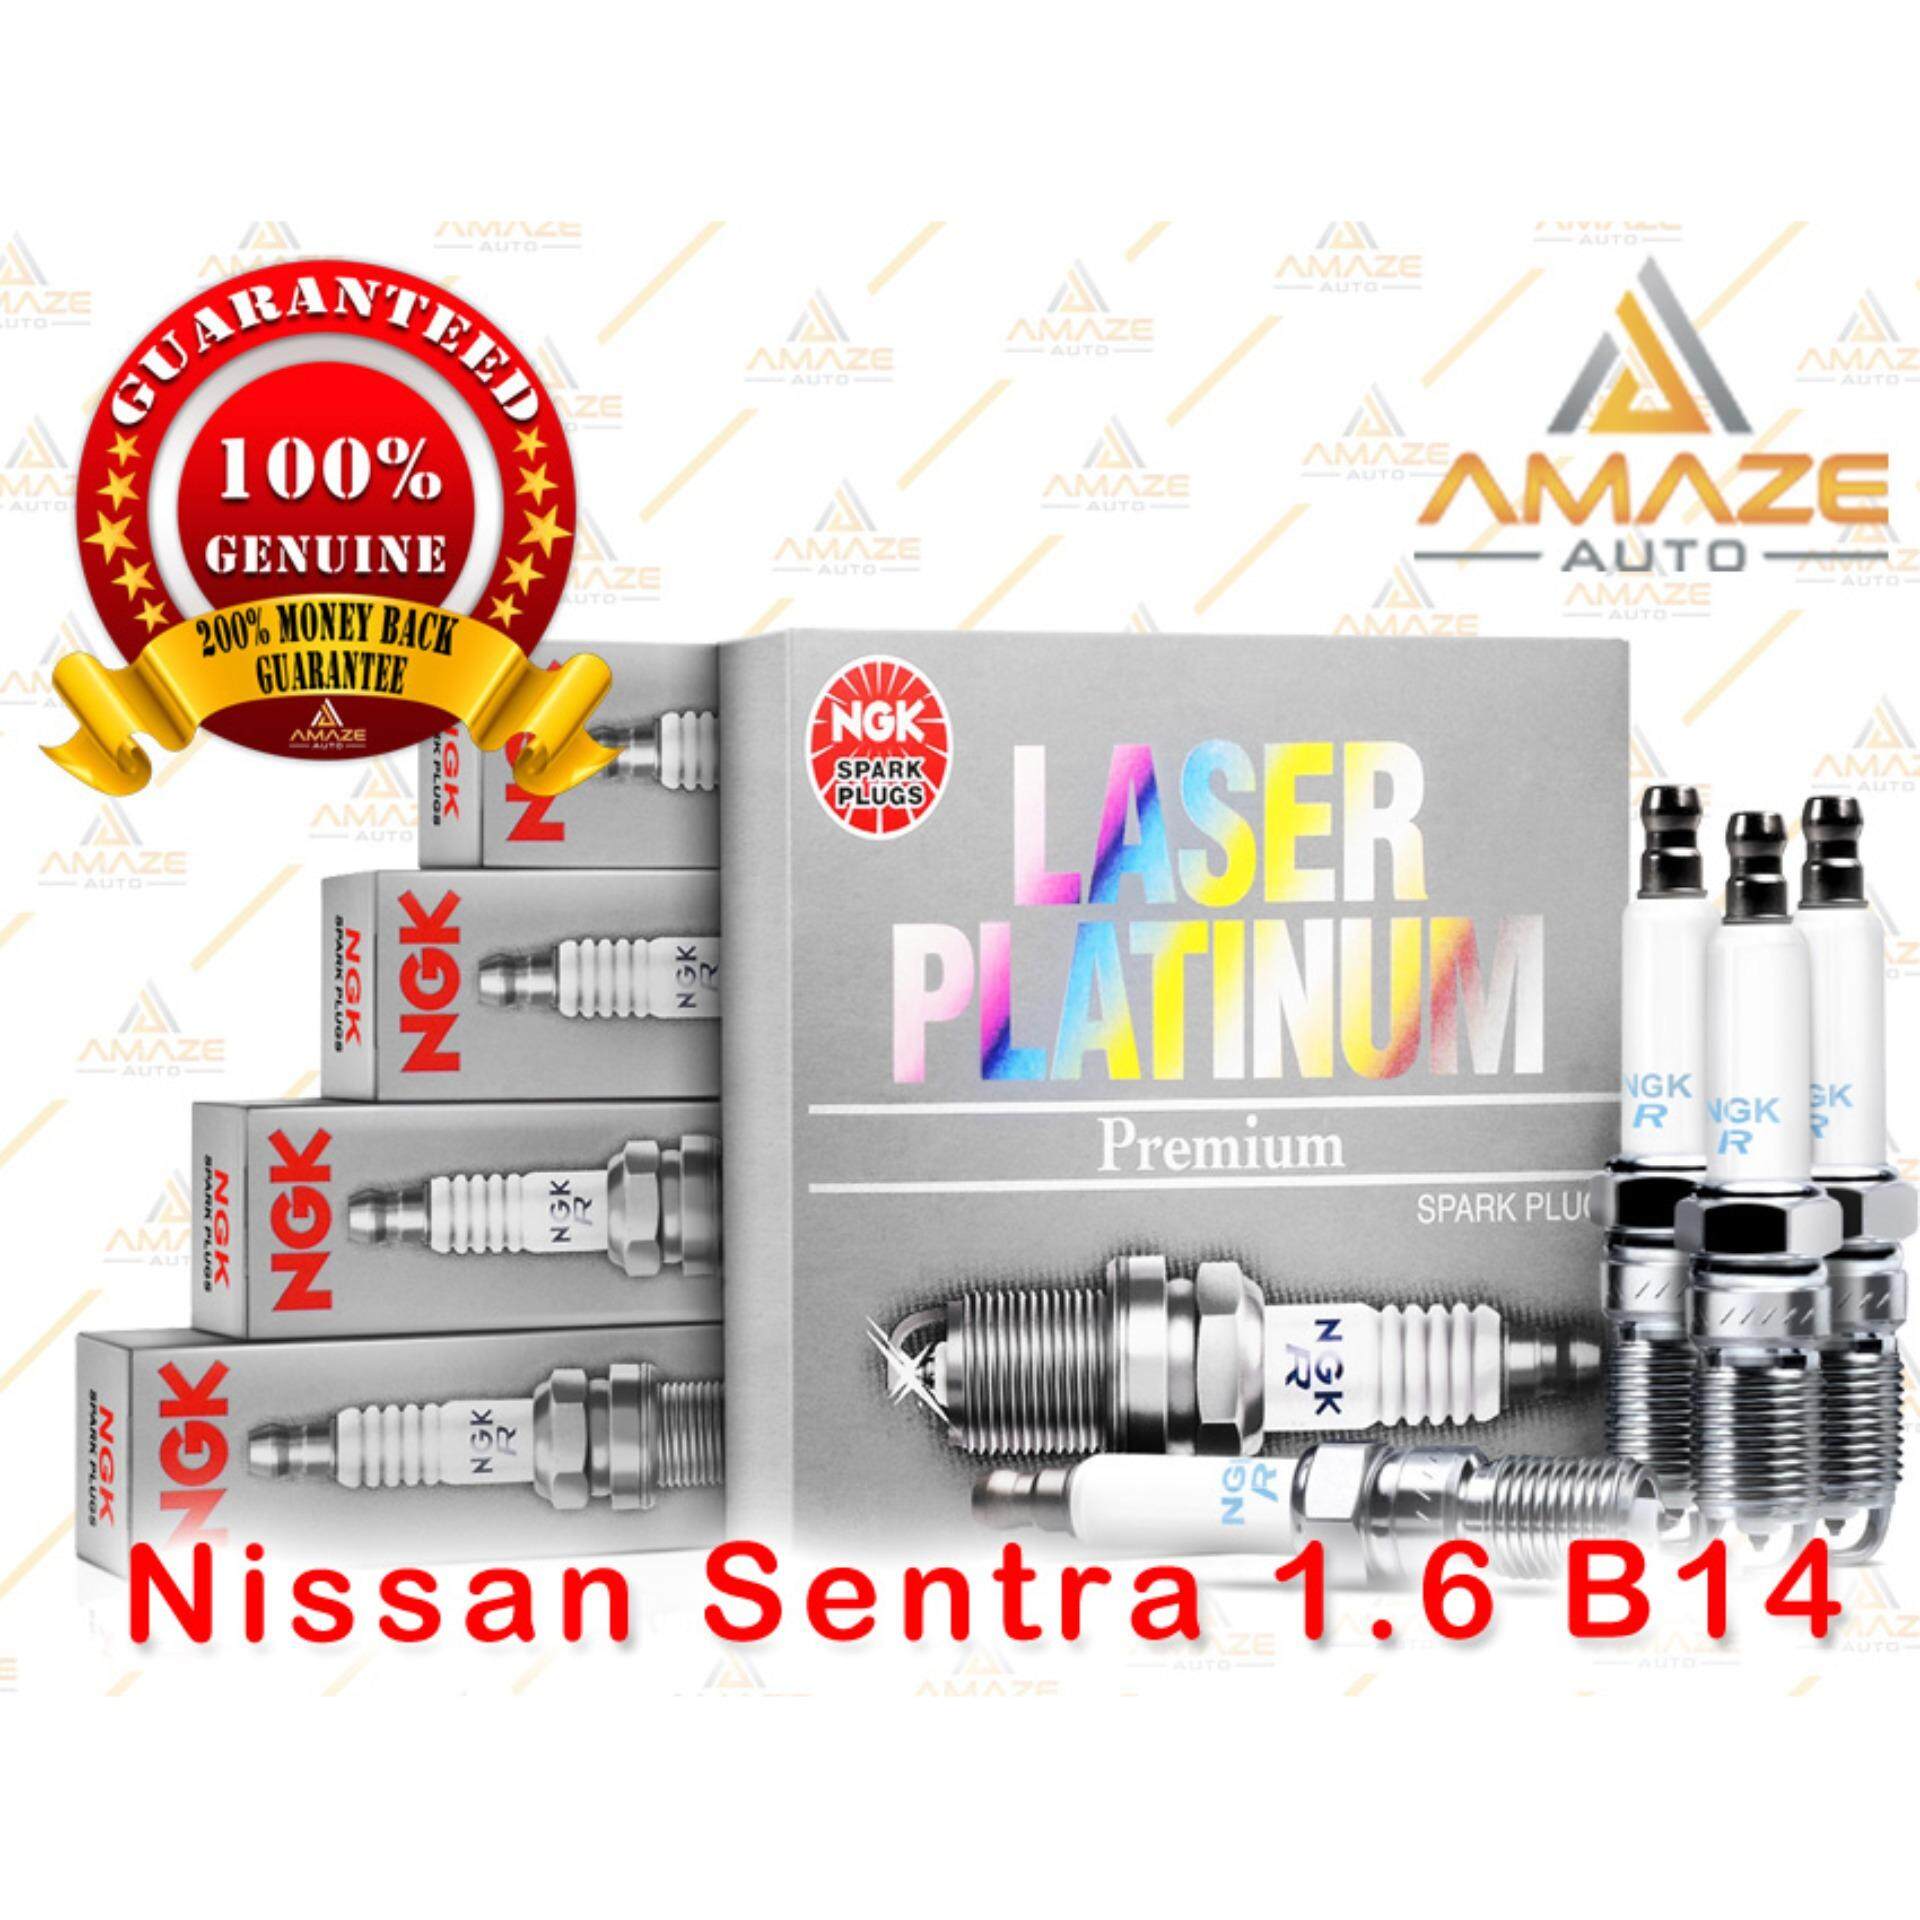 NGK Laser Platinum Spark Plug for Nissan Sentra 1.6 B14